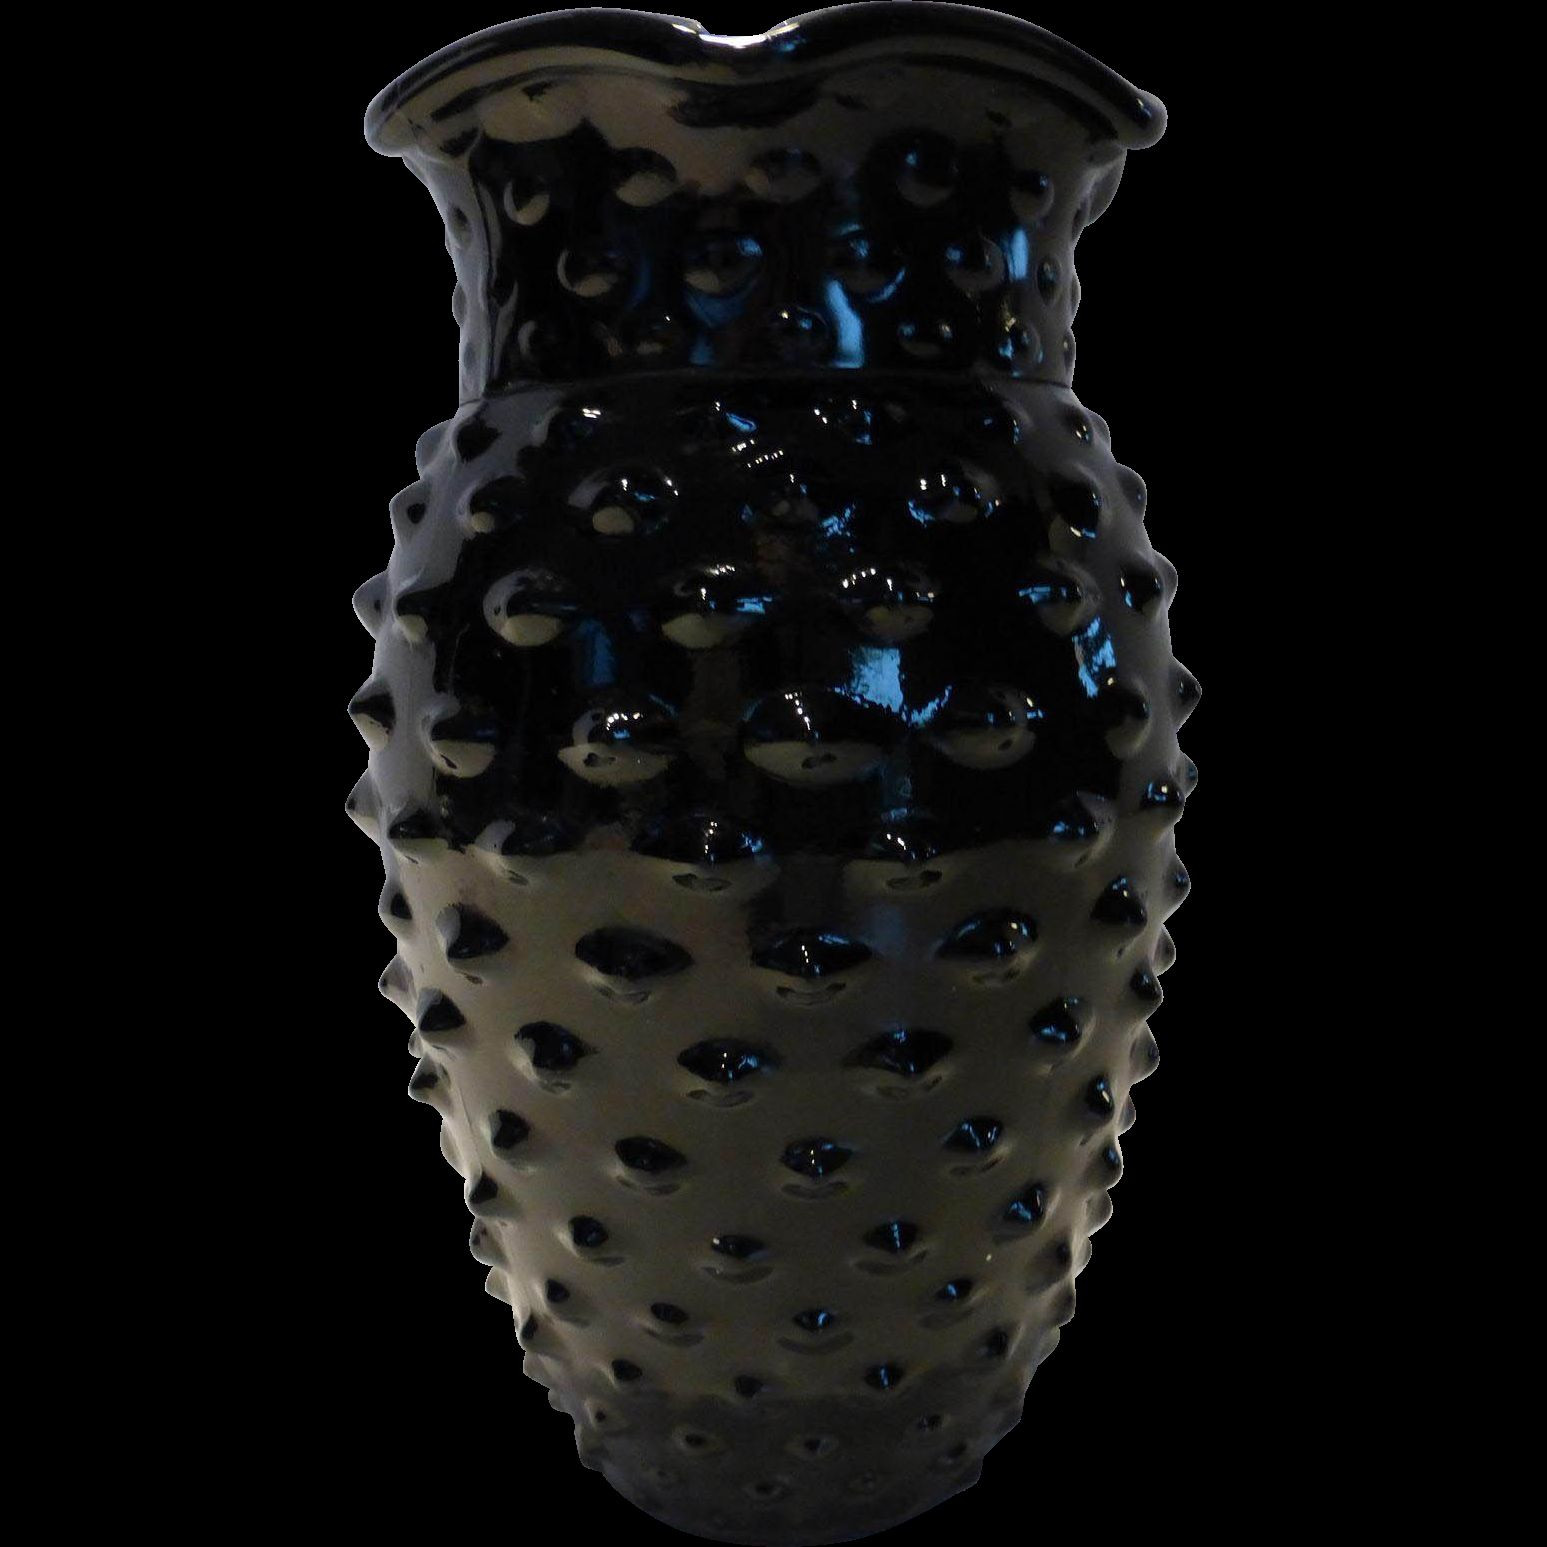 black glass vase vintage of 22 hobnail glass vase the weekly world for download wallpaper large black glass vase